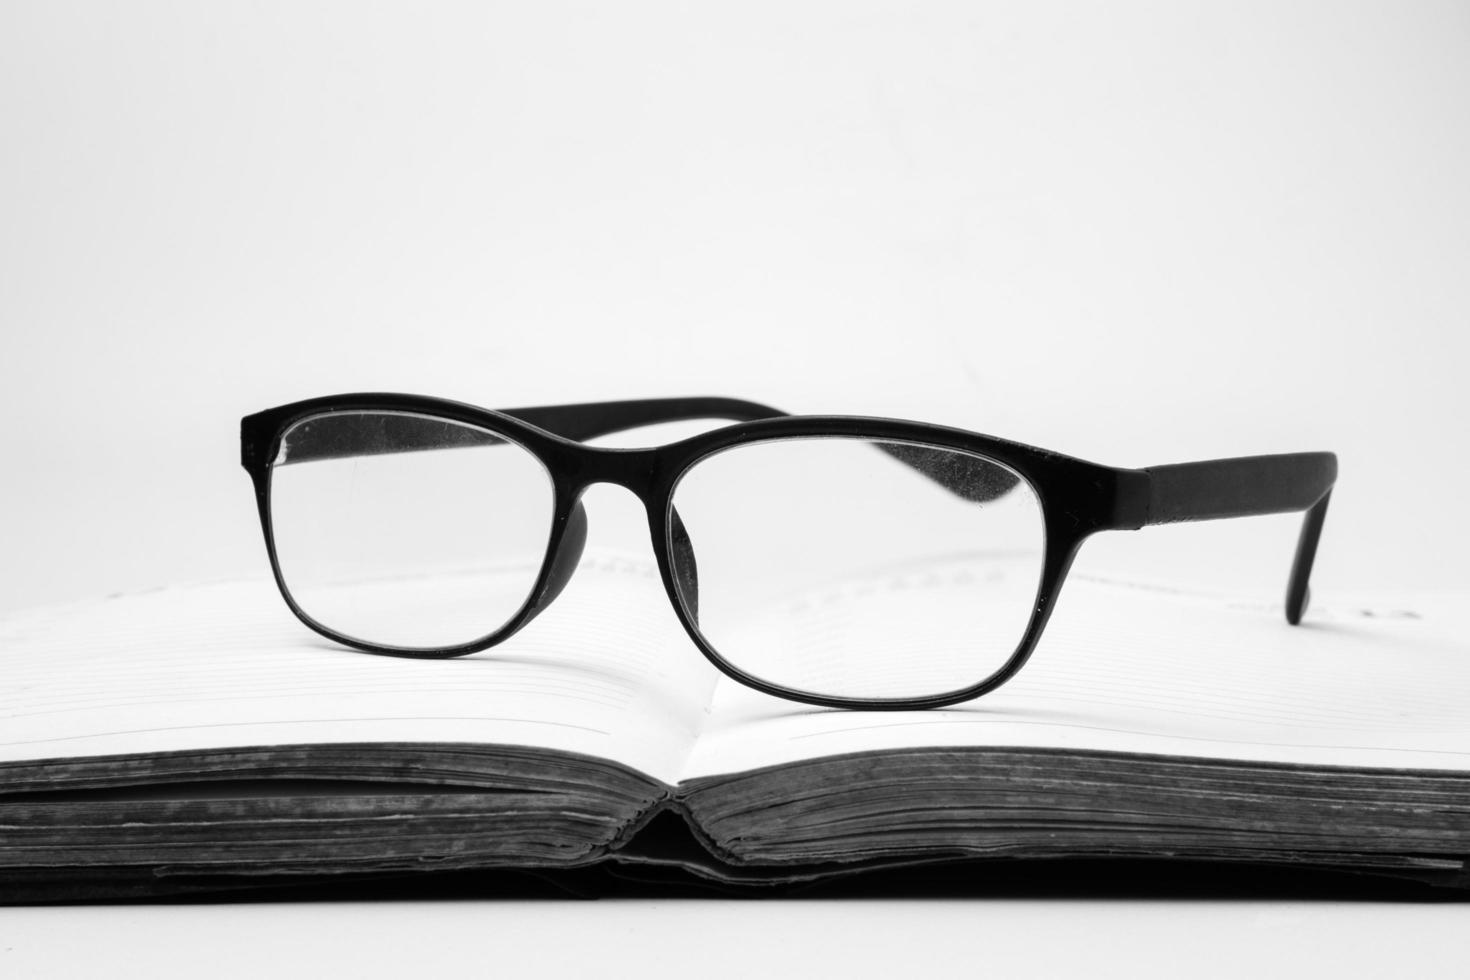 lunettes sur un livre ouvert, ton noir et blanc photo